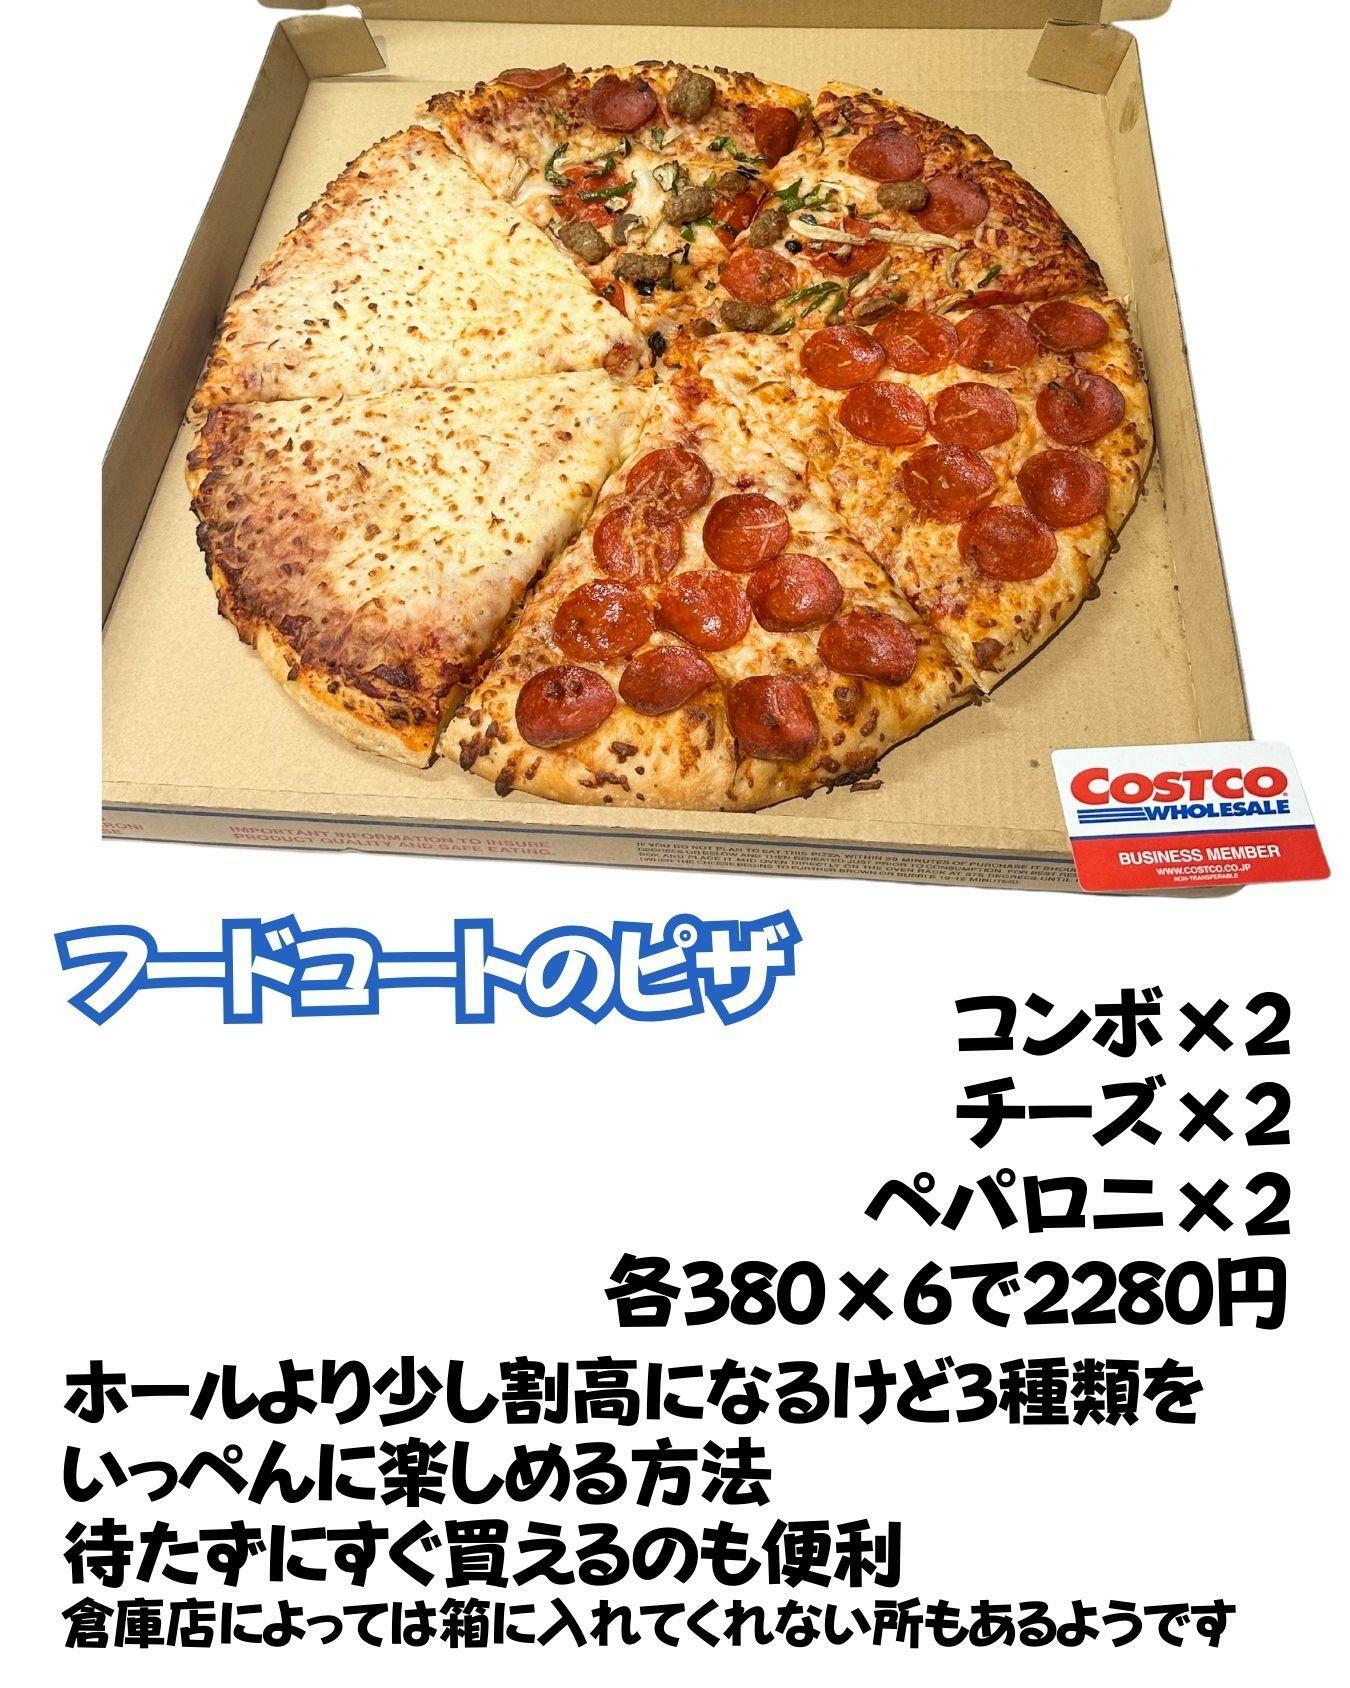 【コストコ】フードコートのピザ